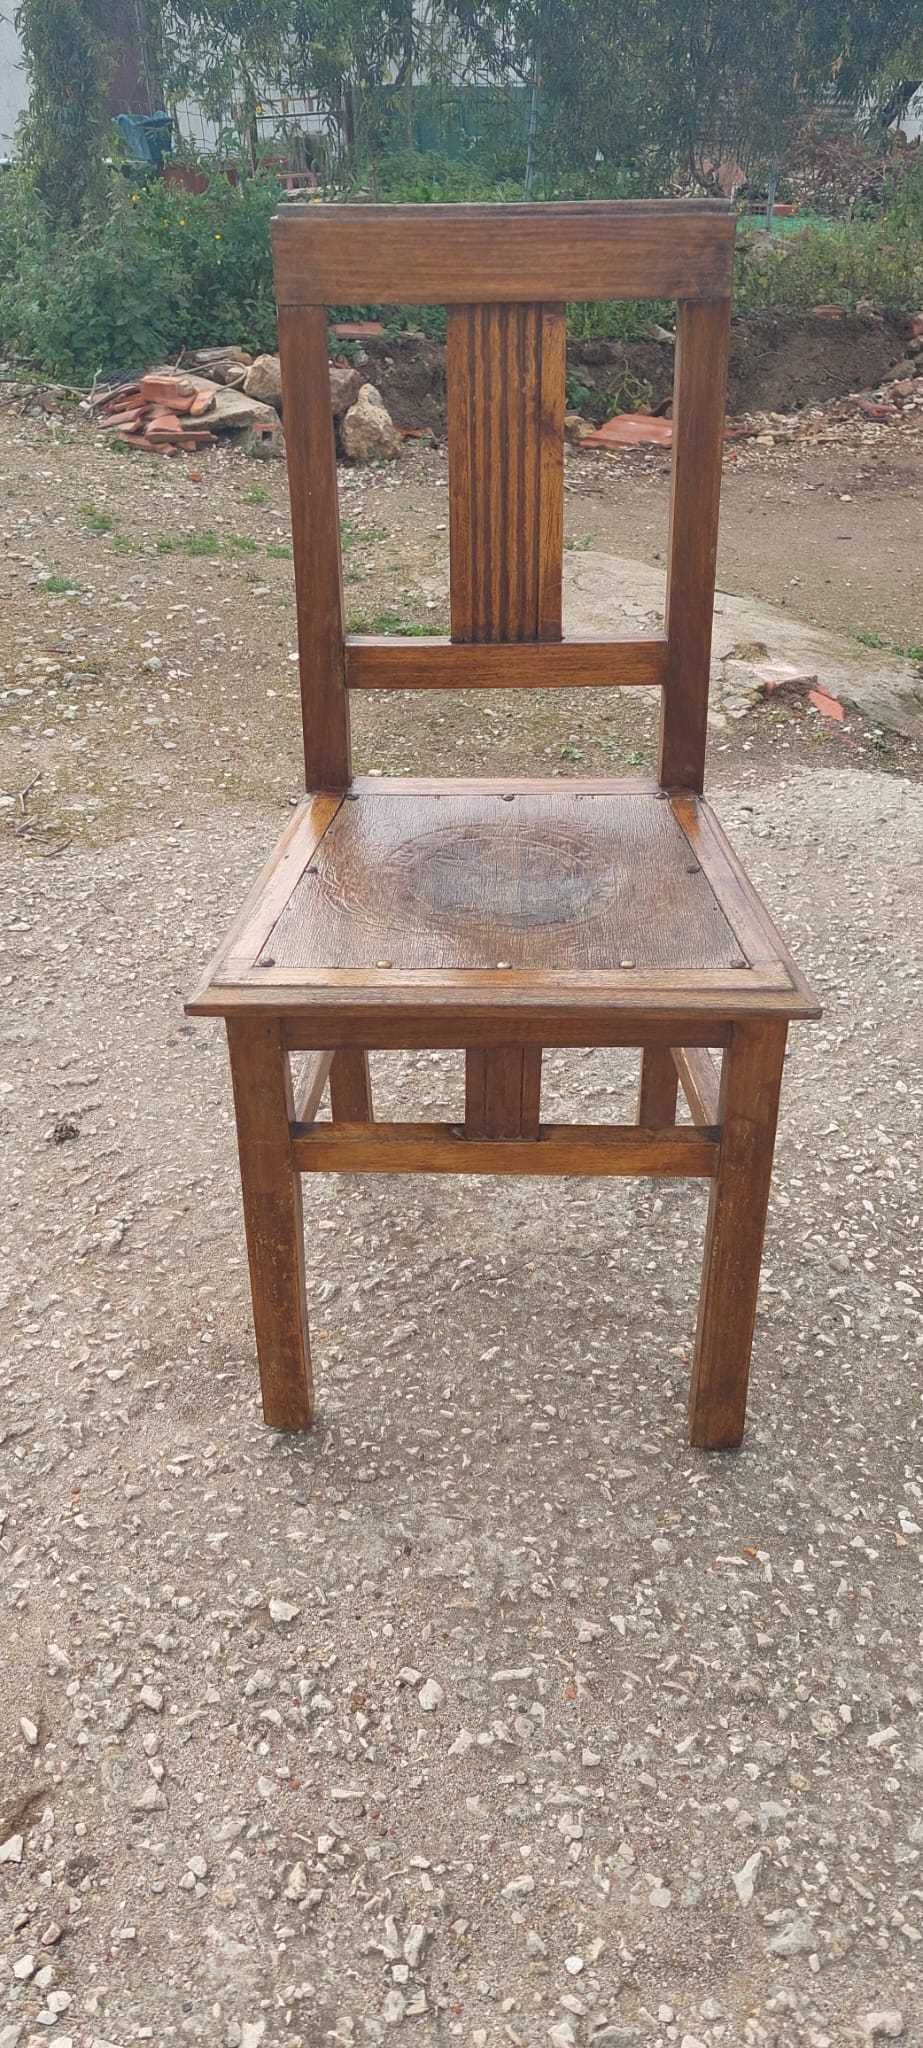 Cadeira Antiga de Madeira